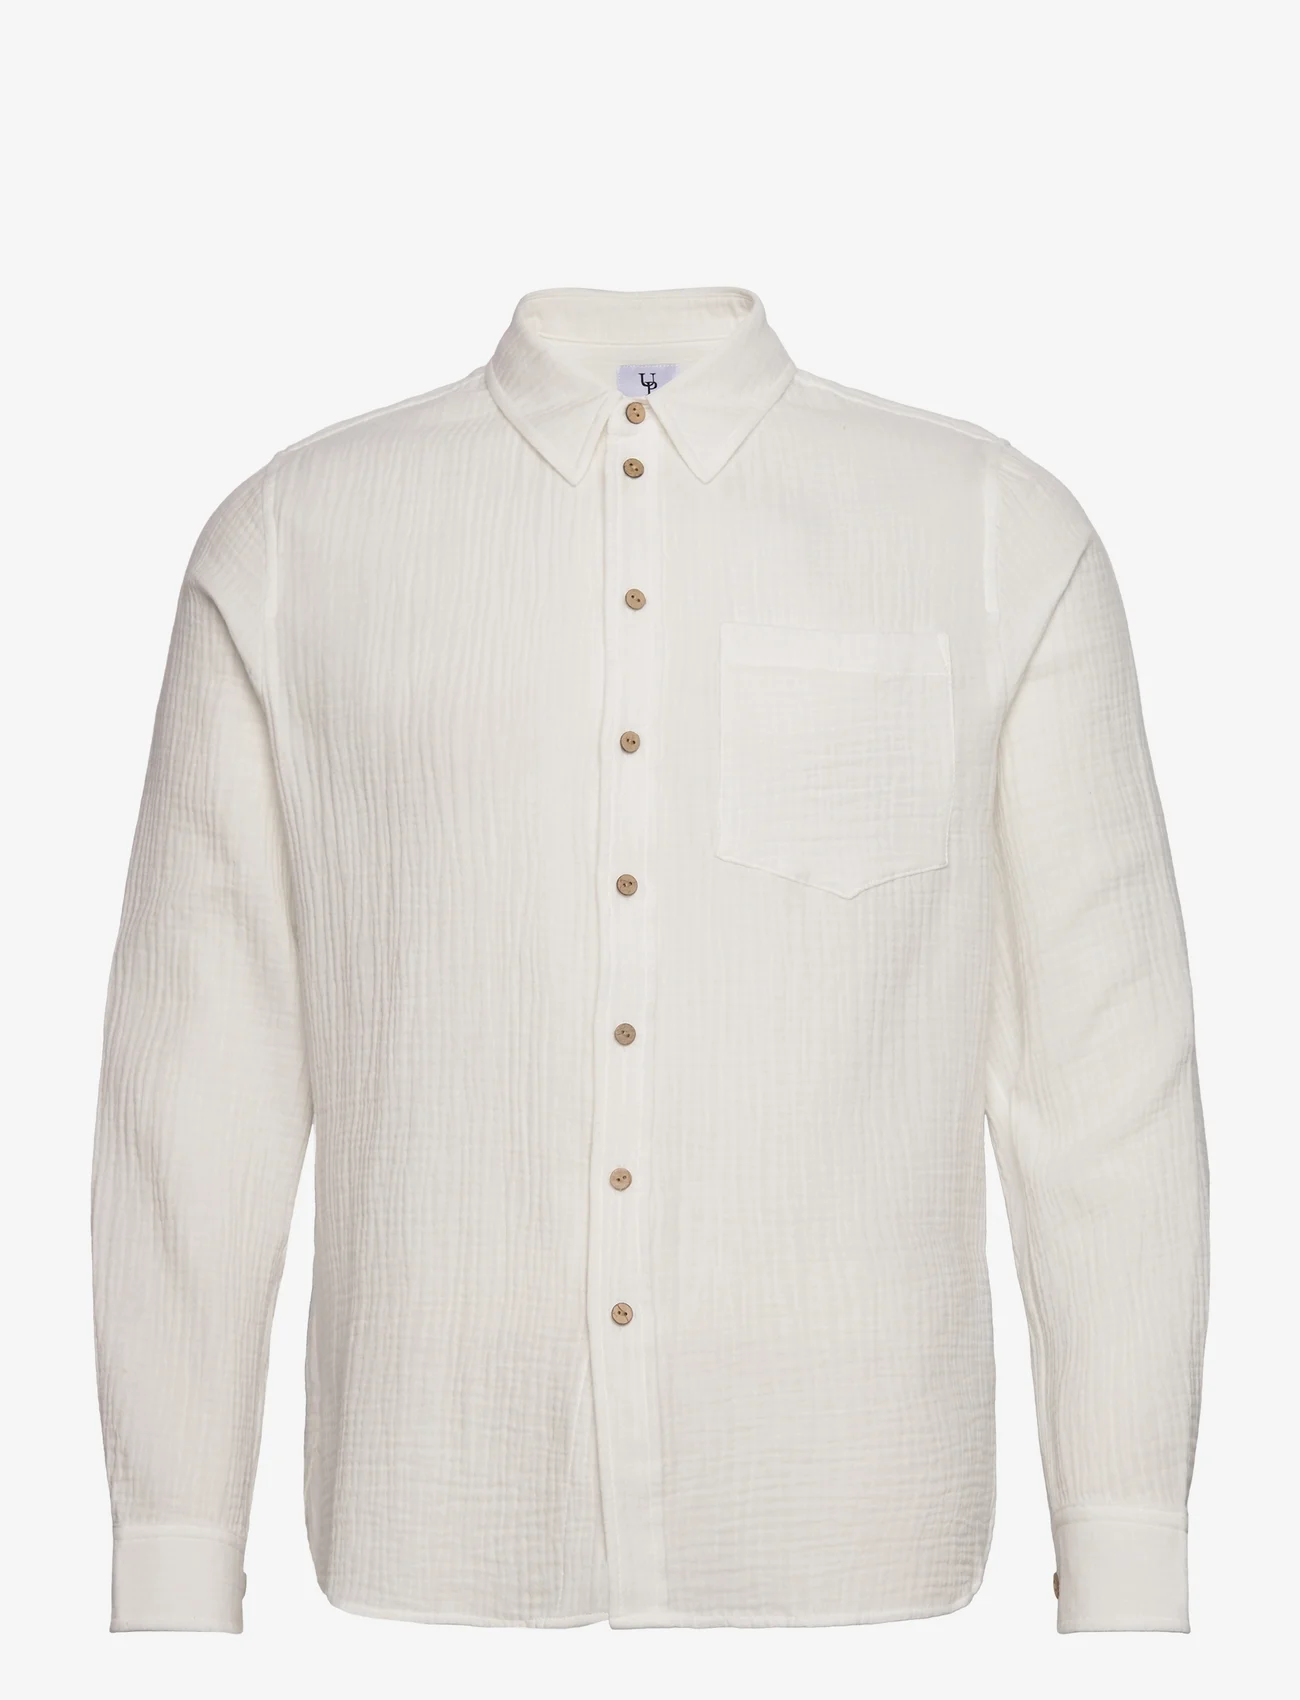 Urban Pioneers - Clive Shirt - laisvalaikio marškiniai - white - 0